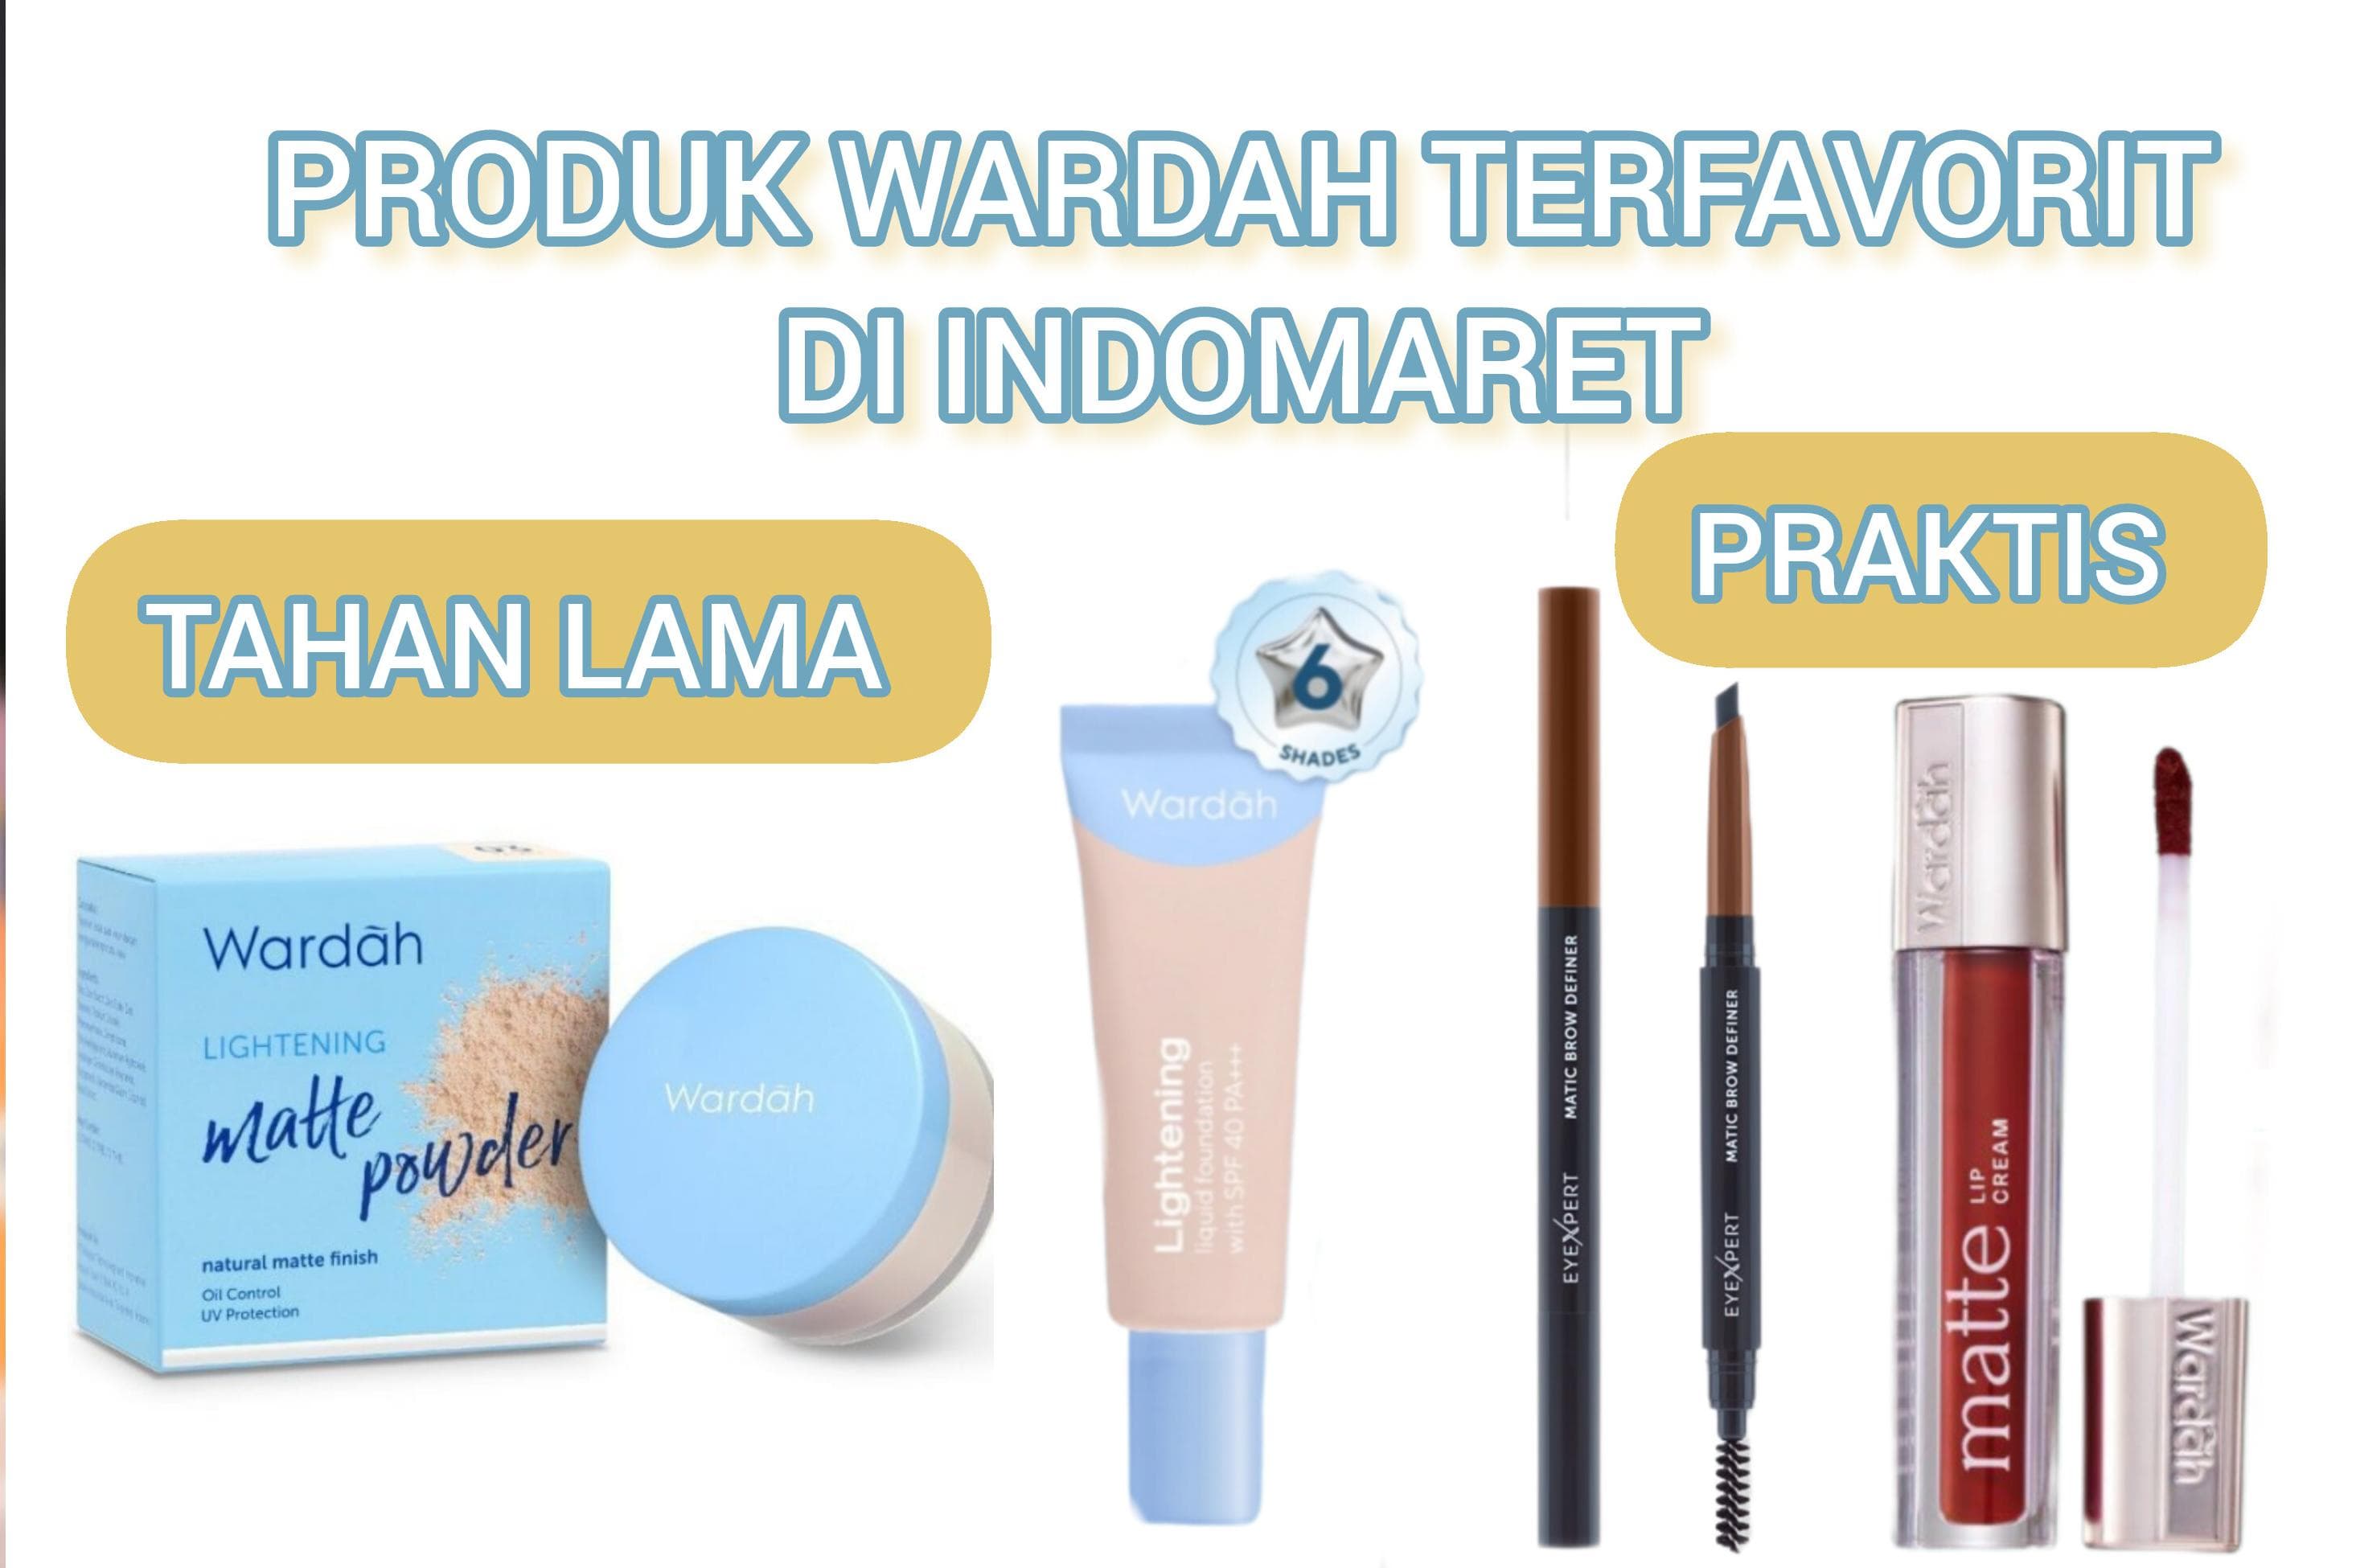 4 Makeup Produk Wardah Terfavorit yang Ada di Indomaret, Praktis Tahan Lama Cocok untuk Ngantor Atau Kondangan